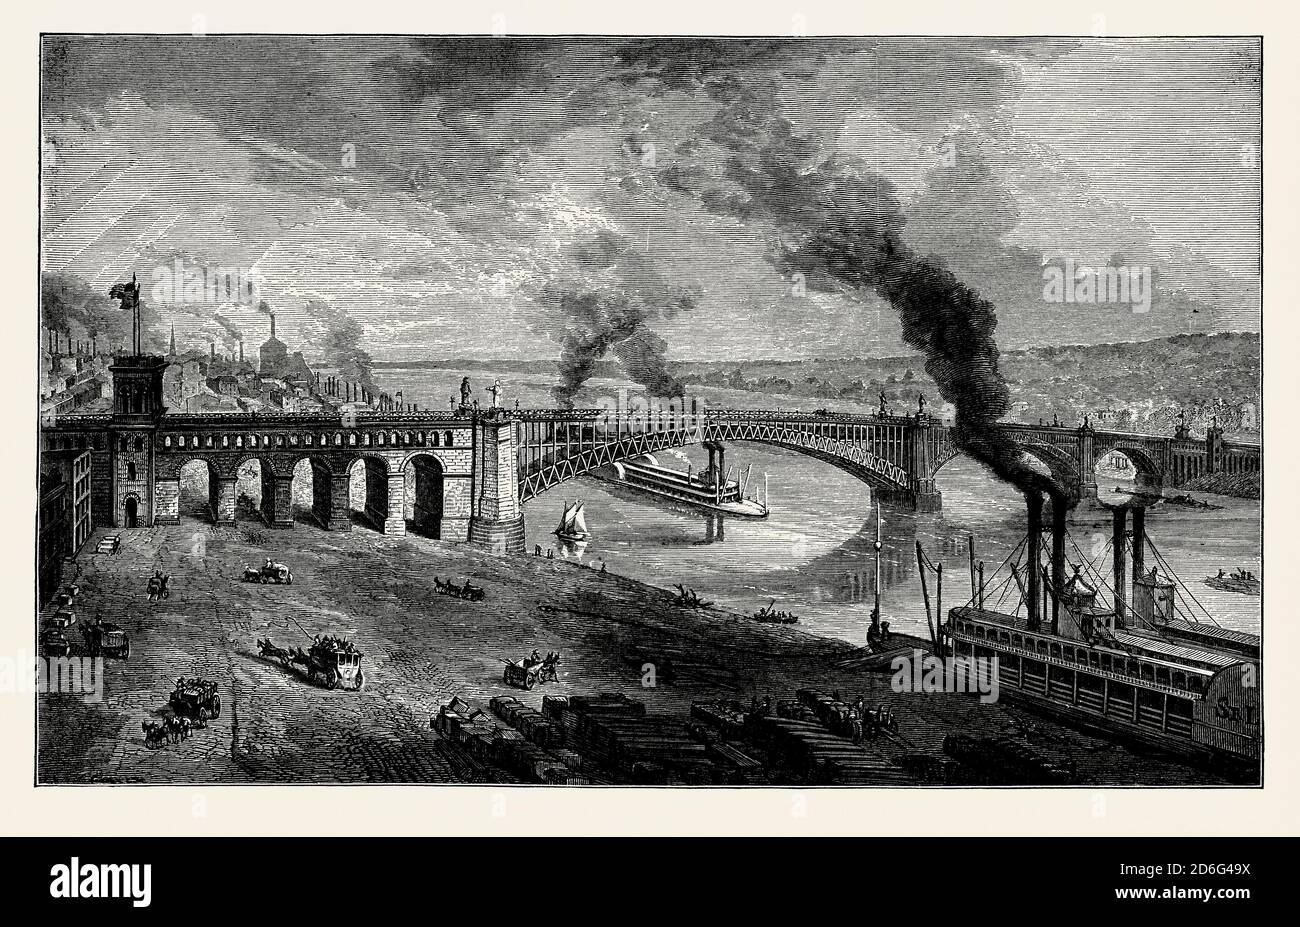 Une ancienne gravure du pont EADS, une route et un pont ferroviaire au-dessus du fleuve Mississippi reliant les villes de St Louis, Missouri et East St Louis, Illinois, Etats-Unis. Il est issu d'un livre victorien d'ingénierie mécanique des années 1880. Le pont porte le nom de son designer James Buchanan EADS. Ouvert en 1874, EADS Bridge est aujourd'hui le plus ancien pont de la rivière. Une grande partie du pont est en fer forgé, mais les principaux composants porteurs étaient en acier. Le pont routier transporte maintenant des véhicules et des piétons. L'ancien pont ferroviaire ci-dessous porte maintenant le système de train léger de Saint-Louis Metrolink. Banque D'Images